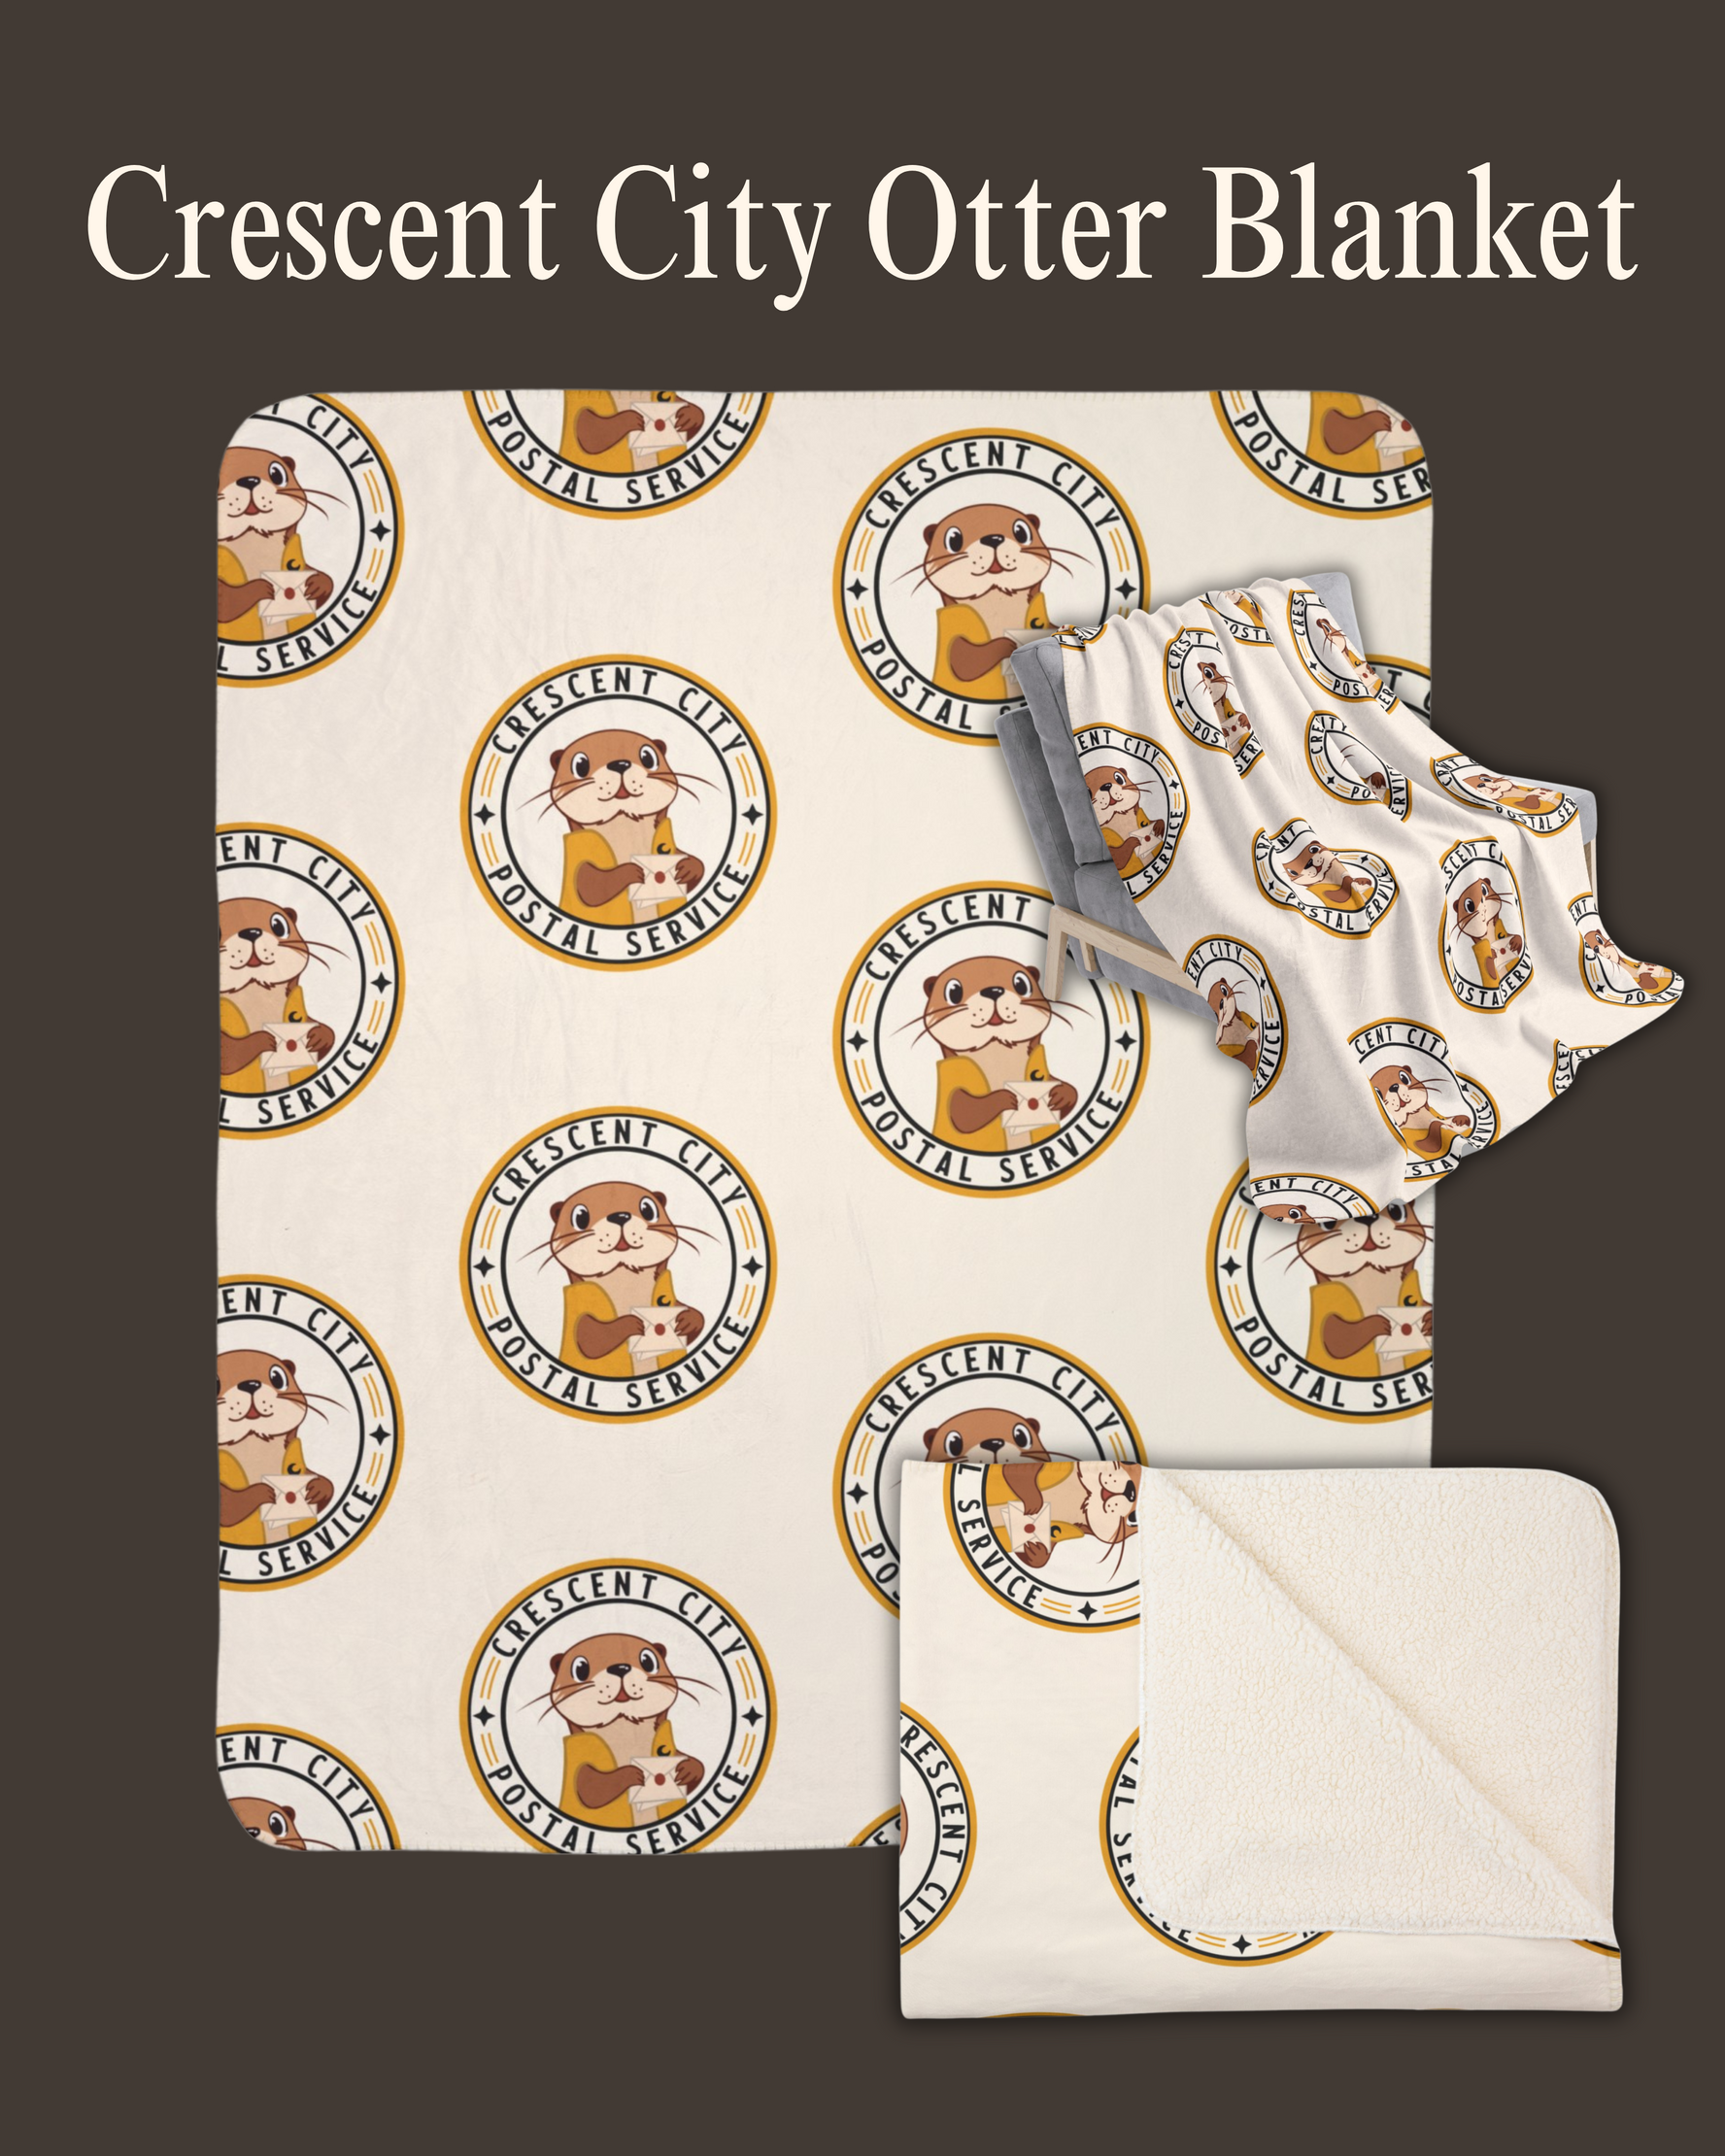 Crescent City Otter Blanket